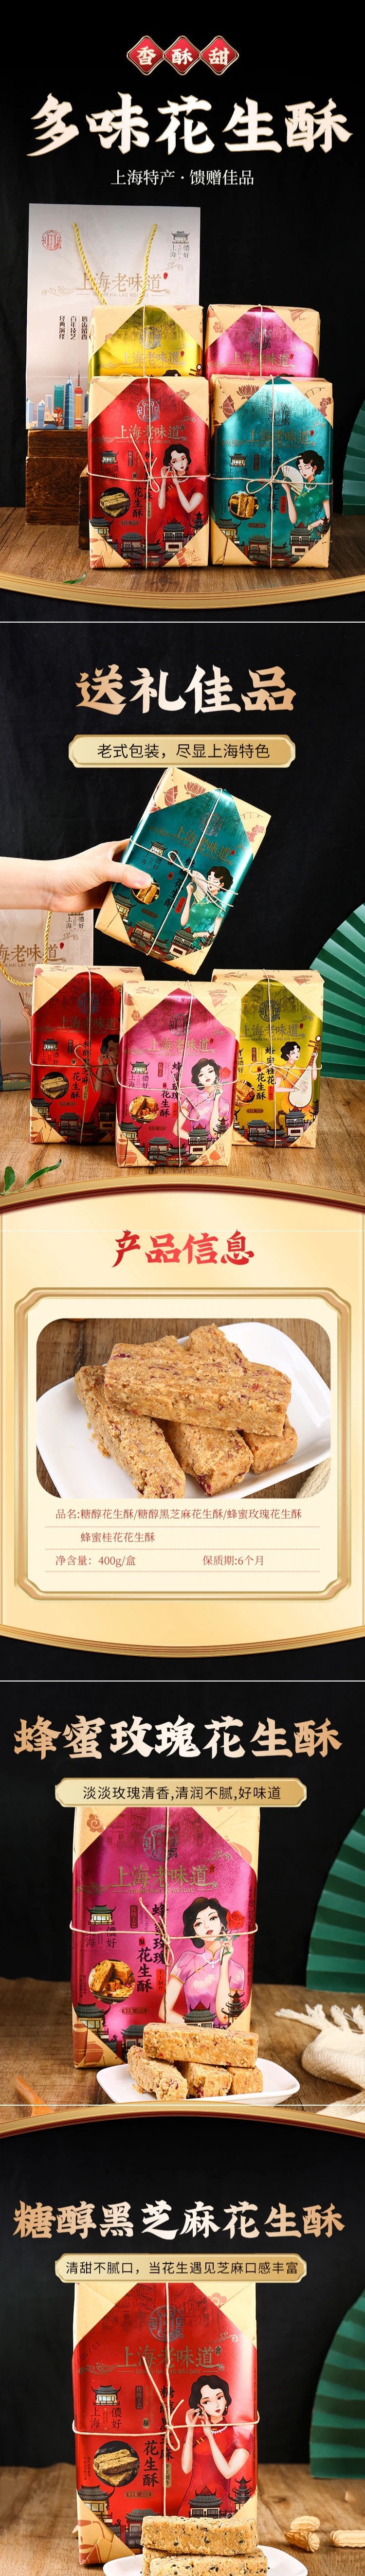 【中国直邮】上海老味道特产花生酥 蜂蜜玫瑰花生酥 400g/盒 2盒装 传统糕点零食(另有3种口味也可备注)